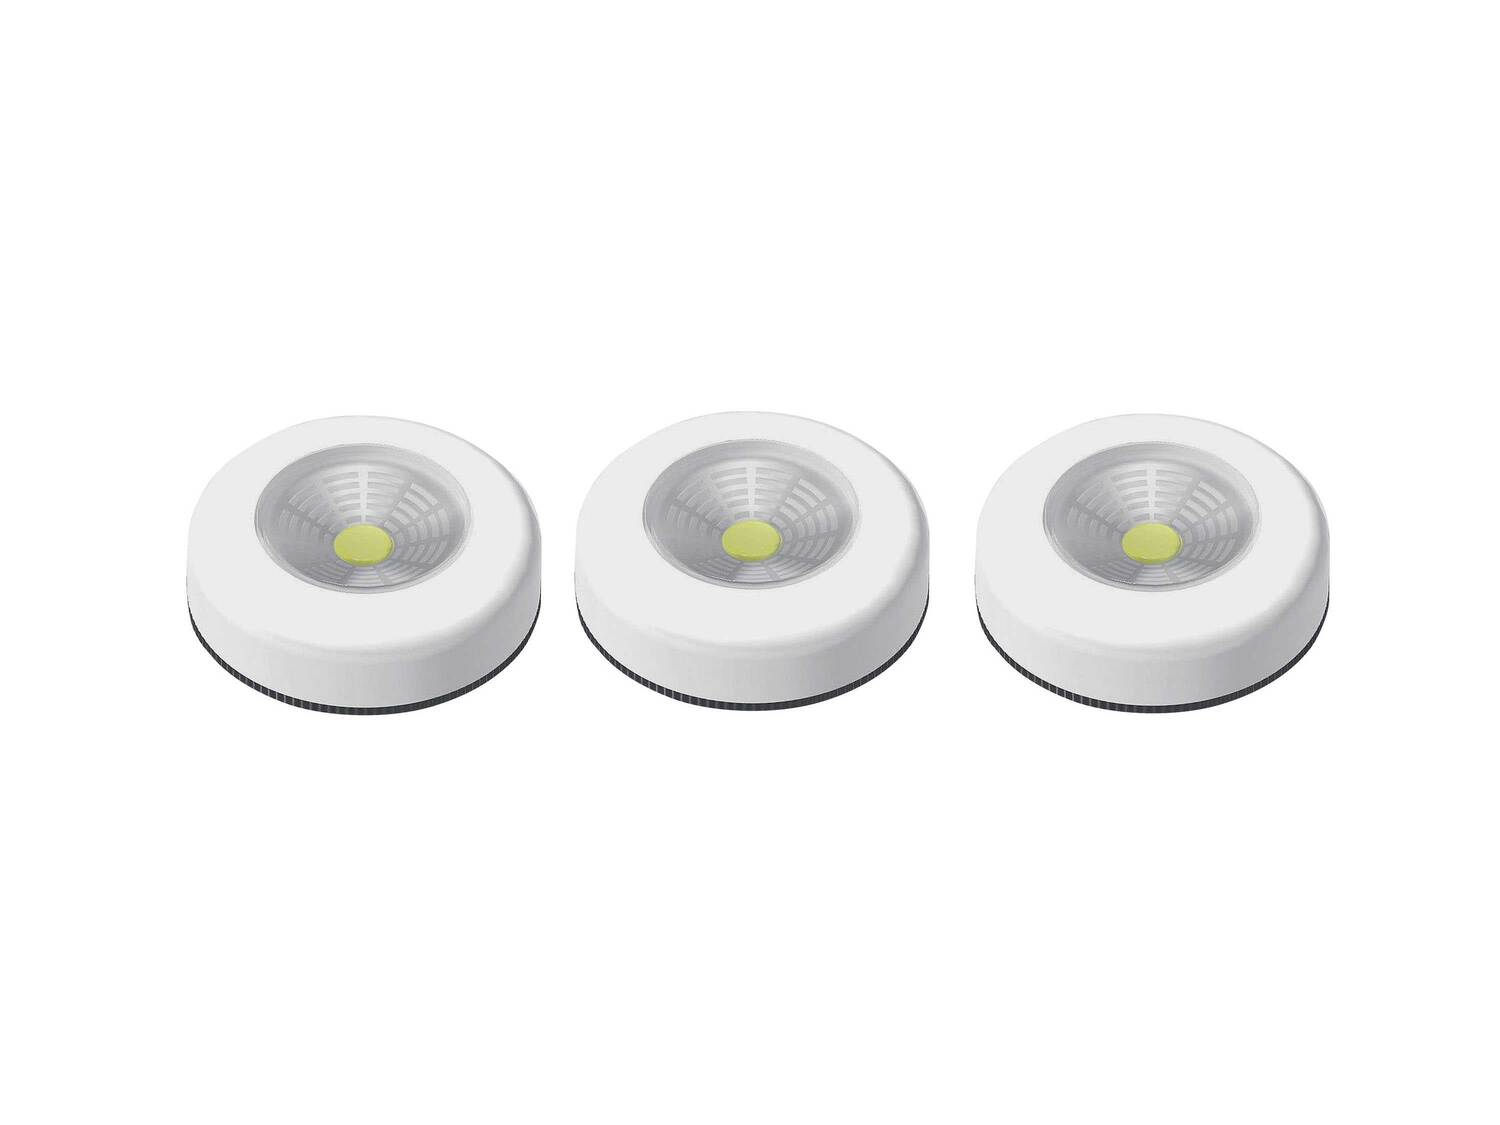 Lampki LED, 3 szt. Livarno, cena 21,99 PLN 
- baterie w zestawie
- zasilanie na ...